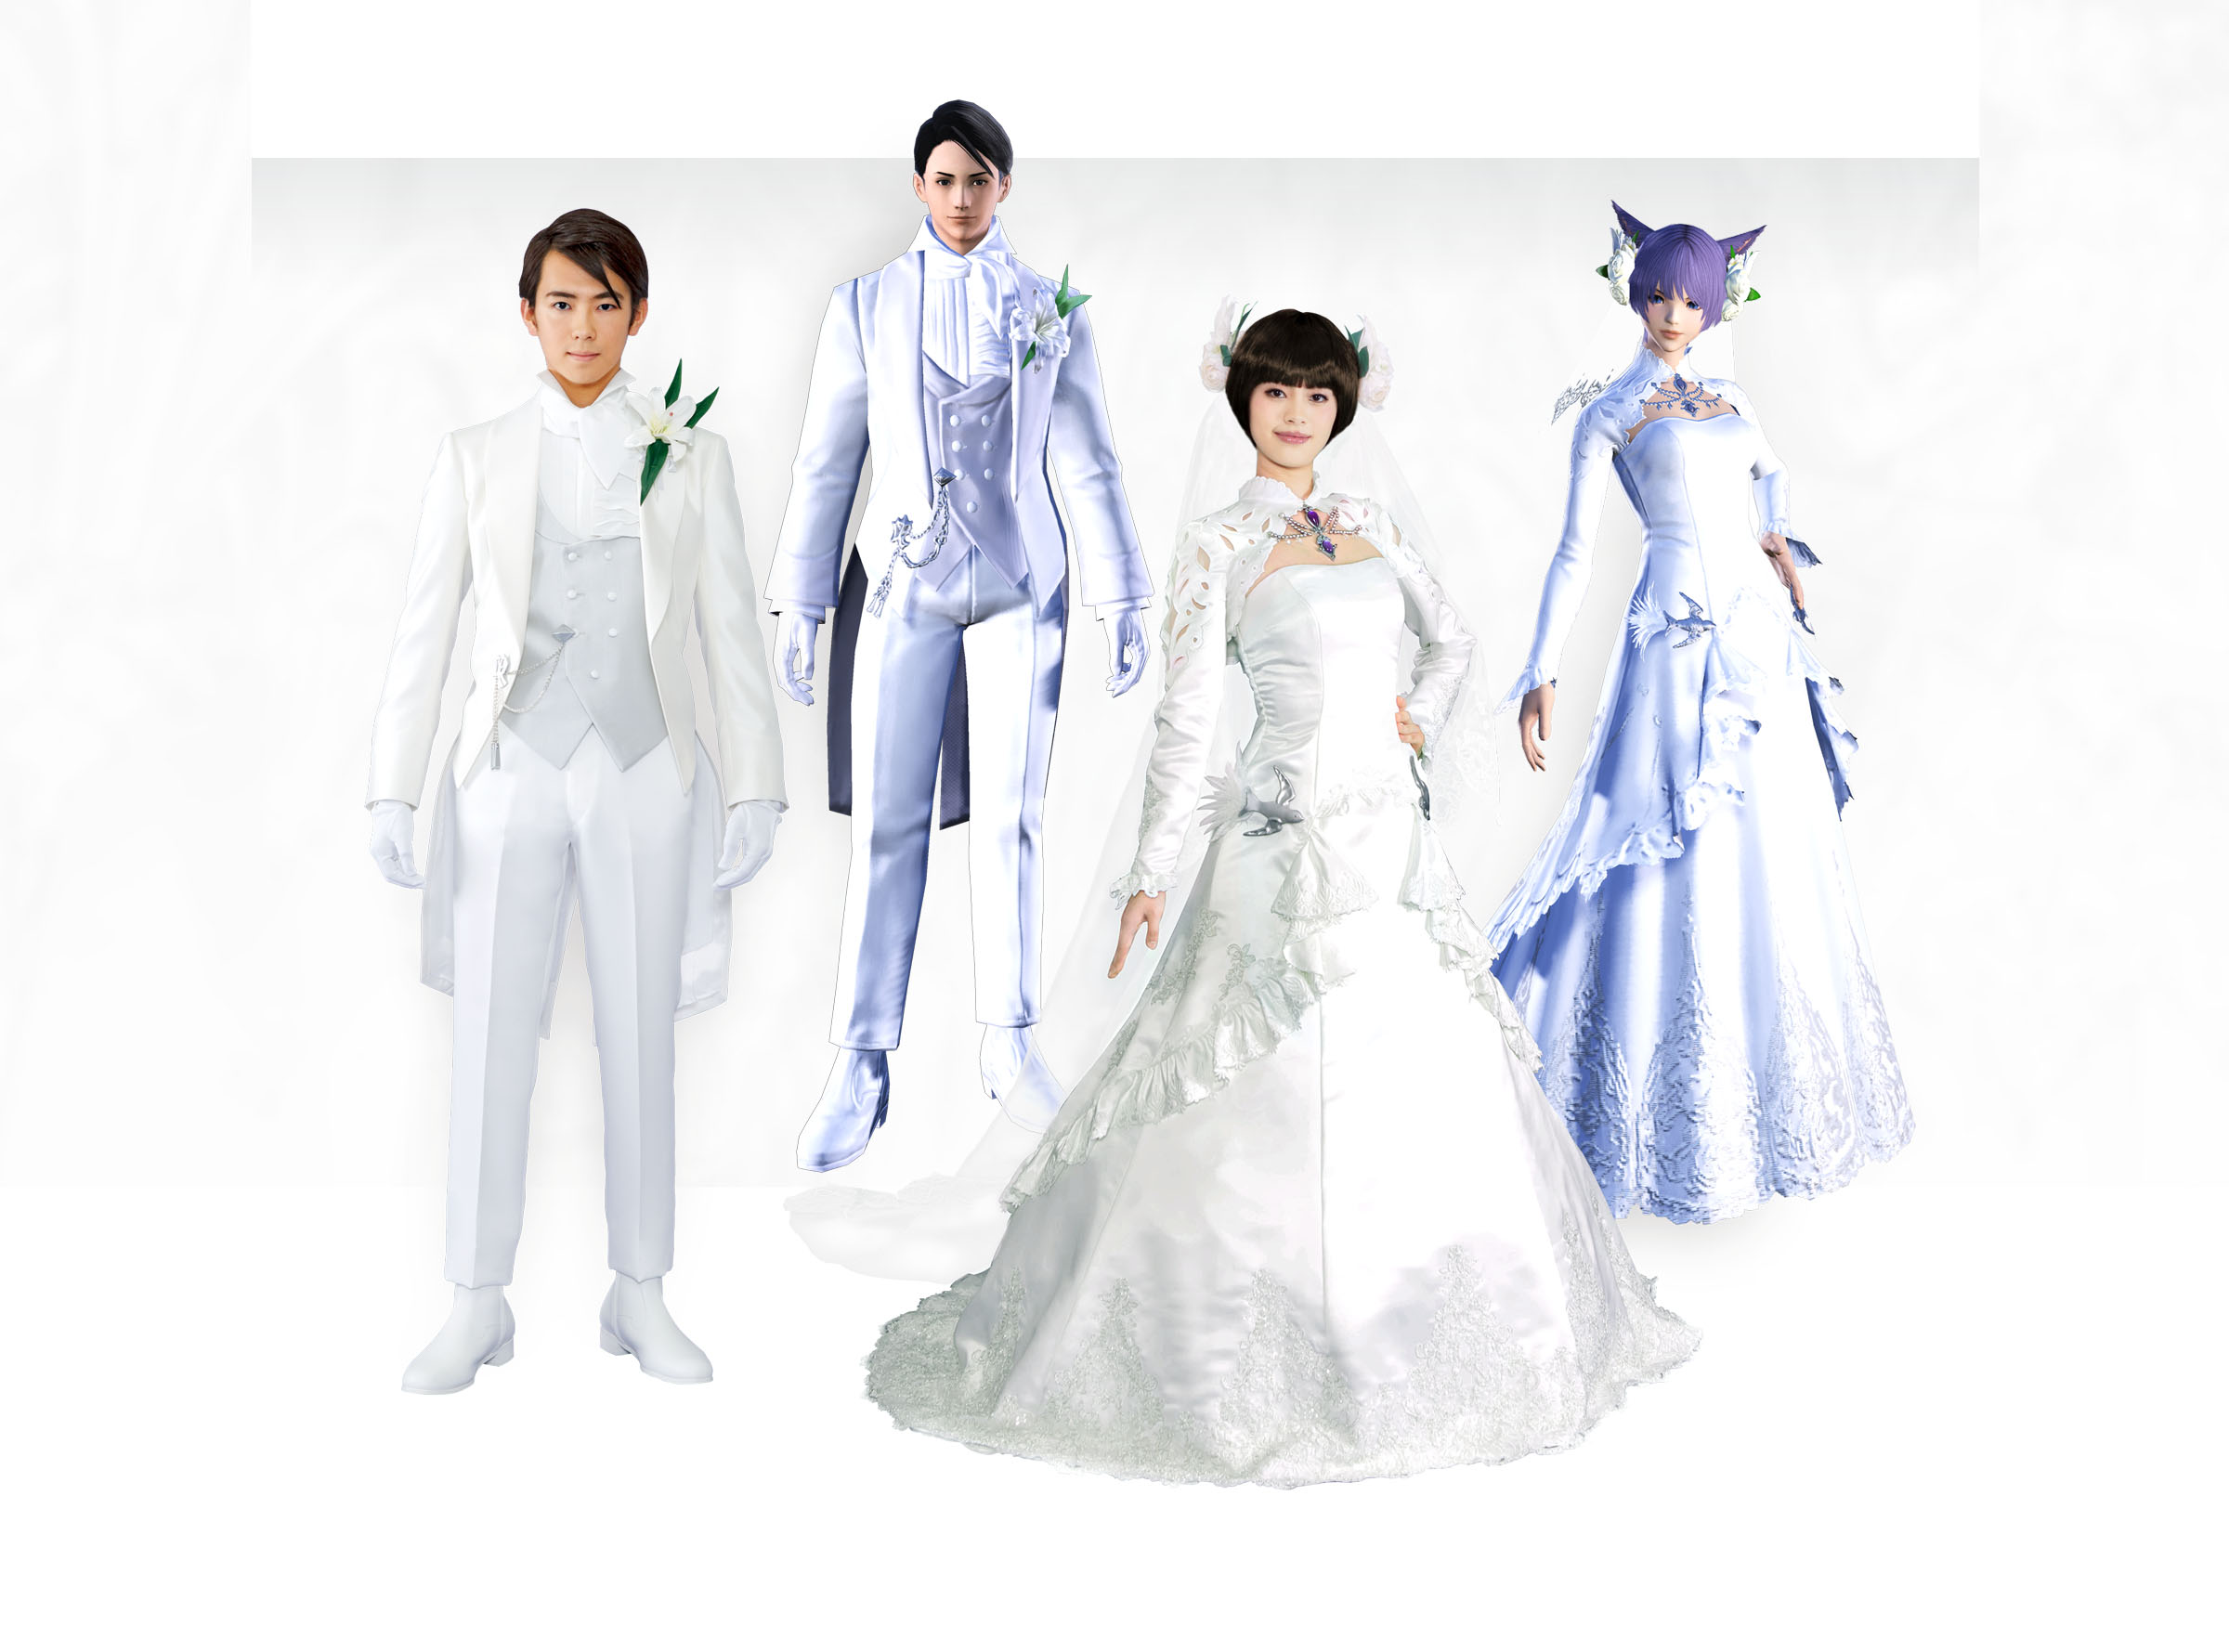 Tuksedo dan gaun pernikahan bertema Final Fantasy XIV